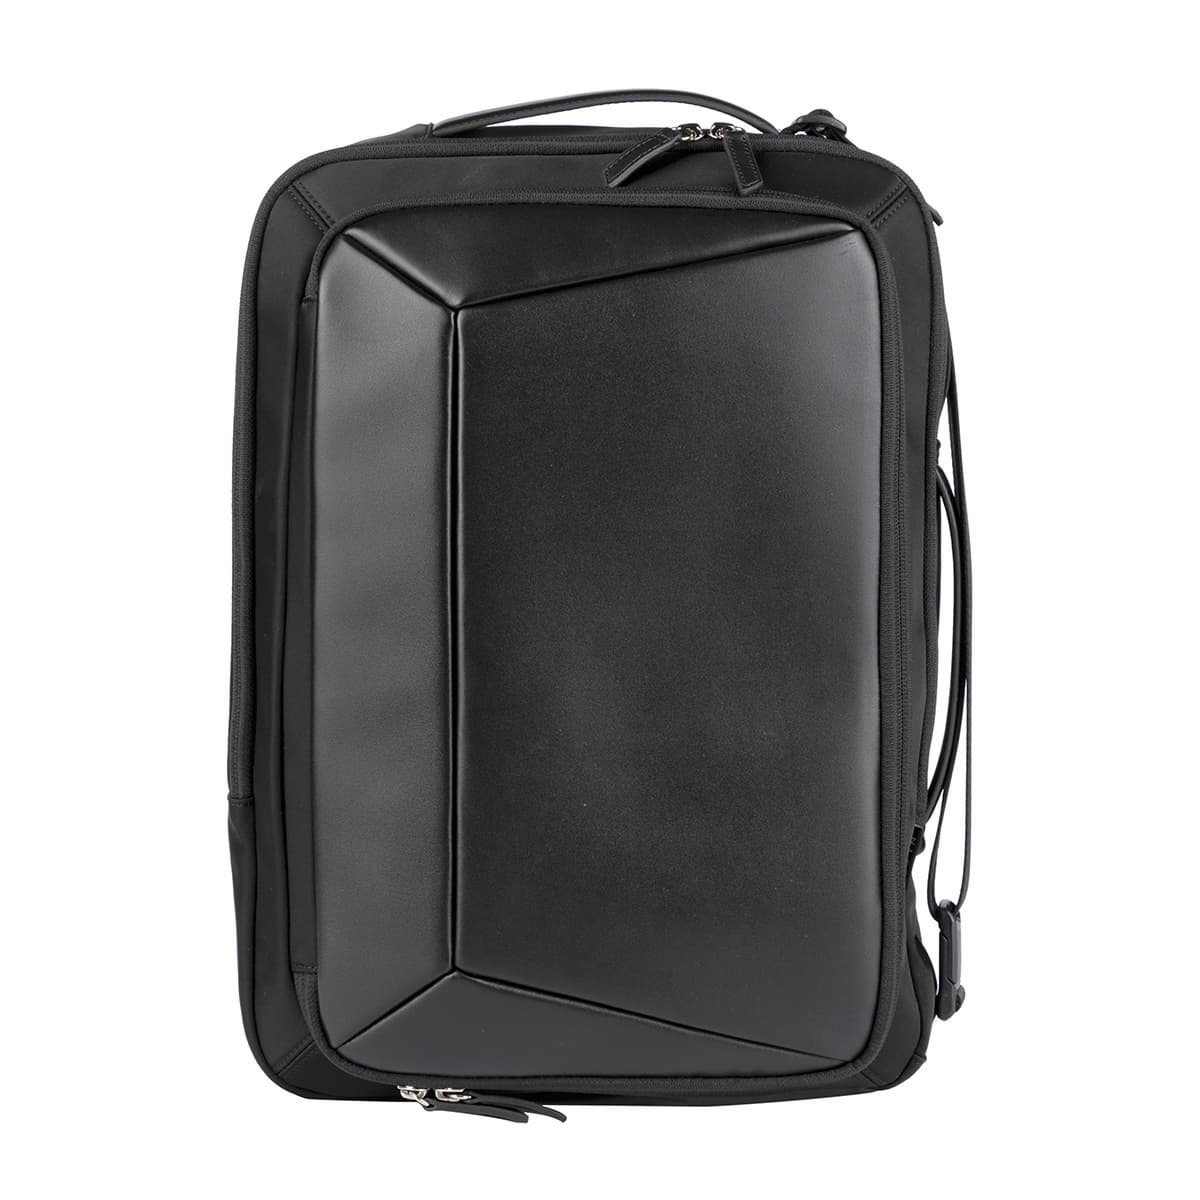 bag_ backpack_ crossbag_ leather bag_ laptop bag_ business bag_ daily bag_ tote bag_